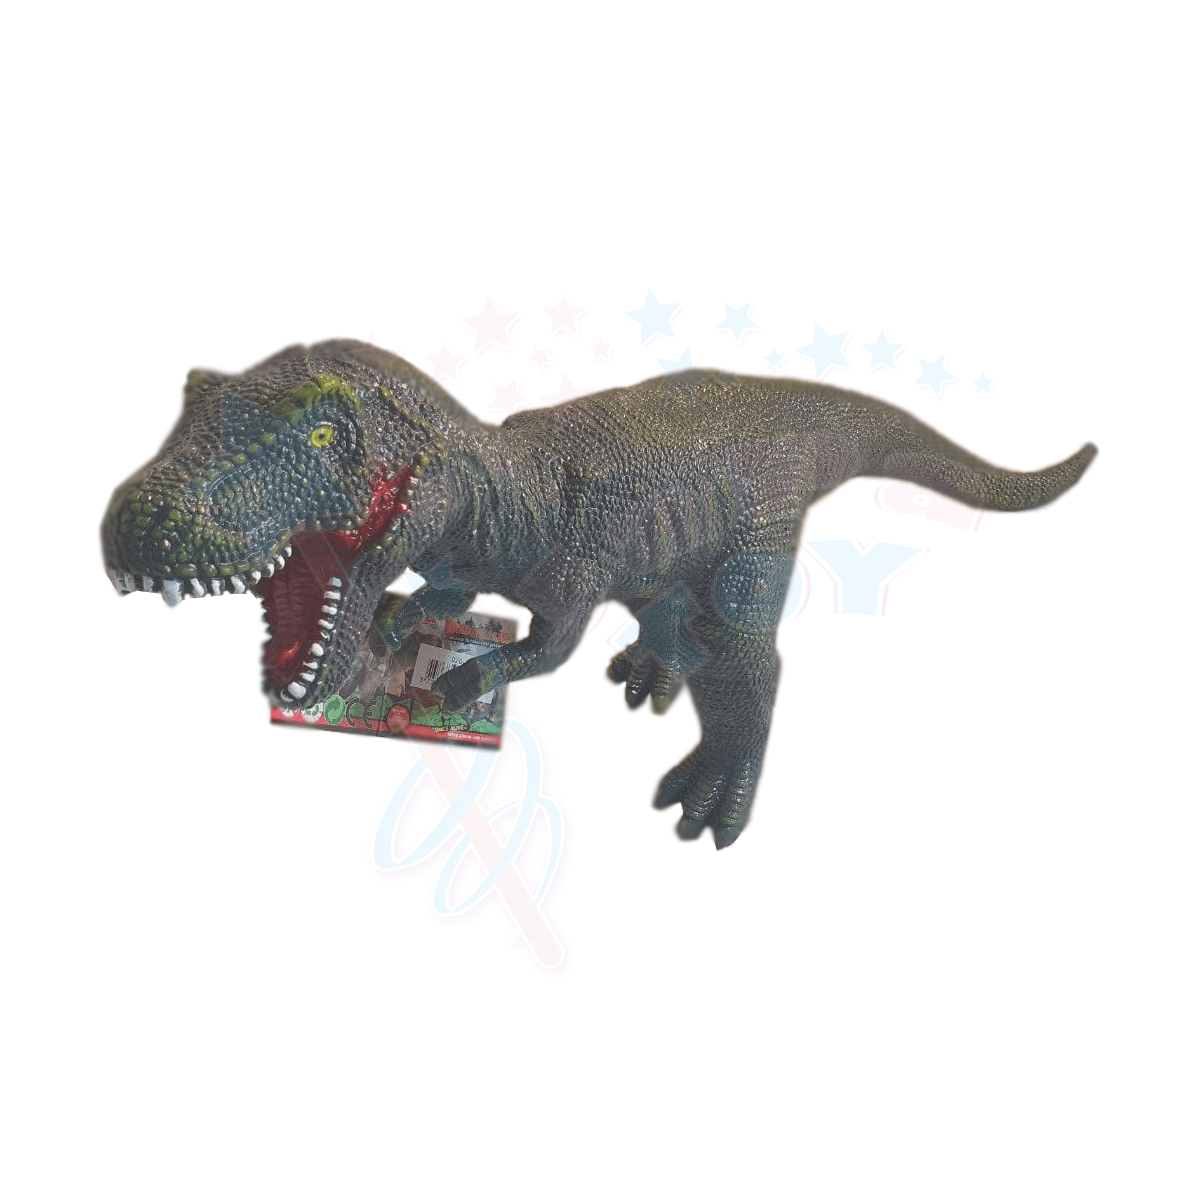 فیگور دایناسور تیرکس بزرگ نرم و صدادار (Jurassic World Voice Dinosaur Figures)